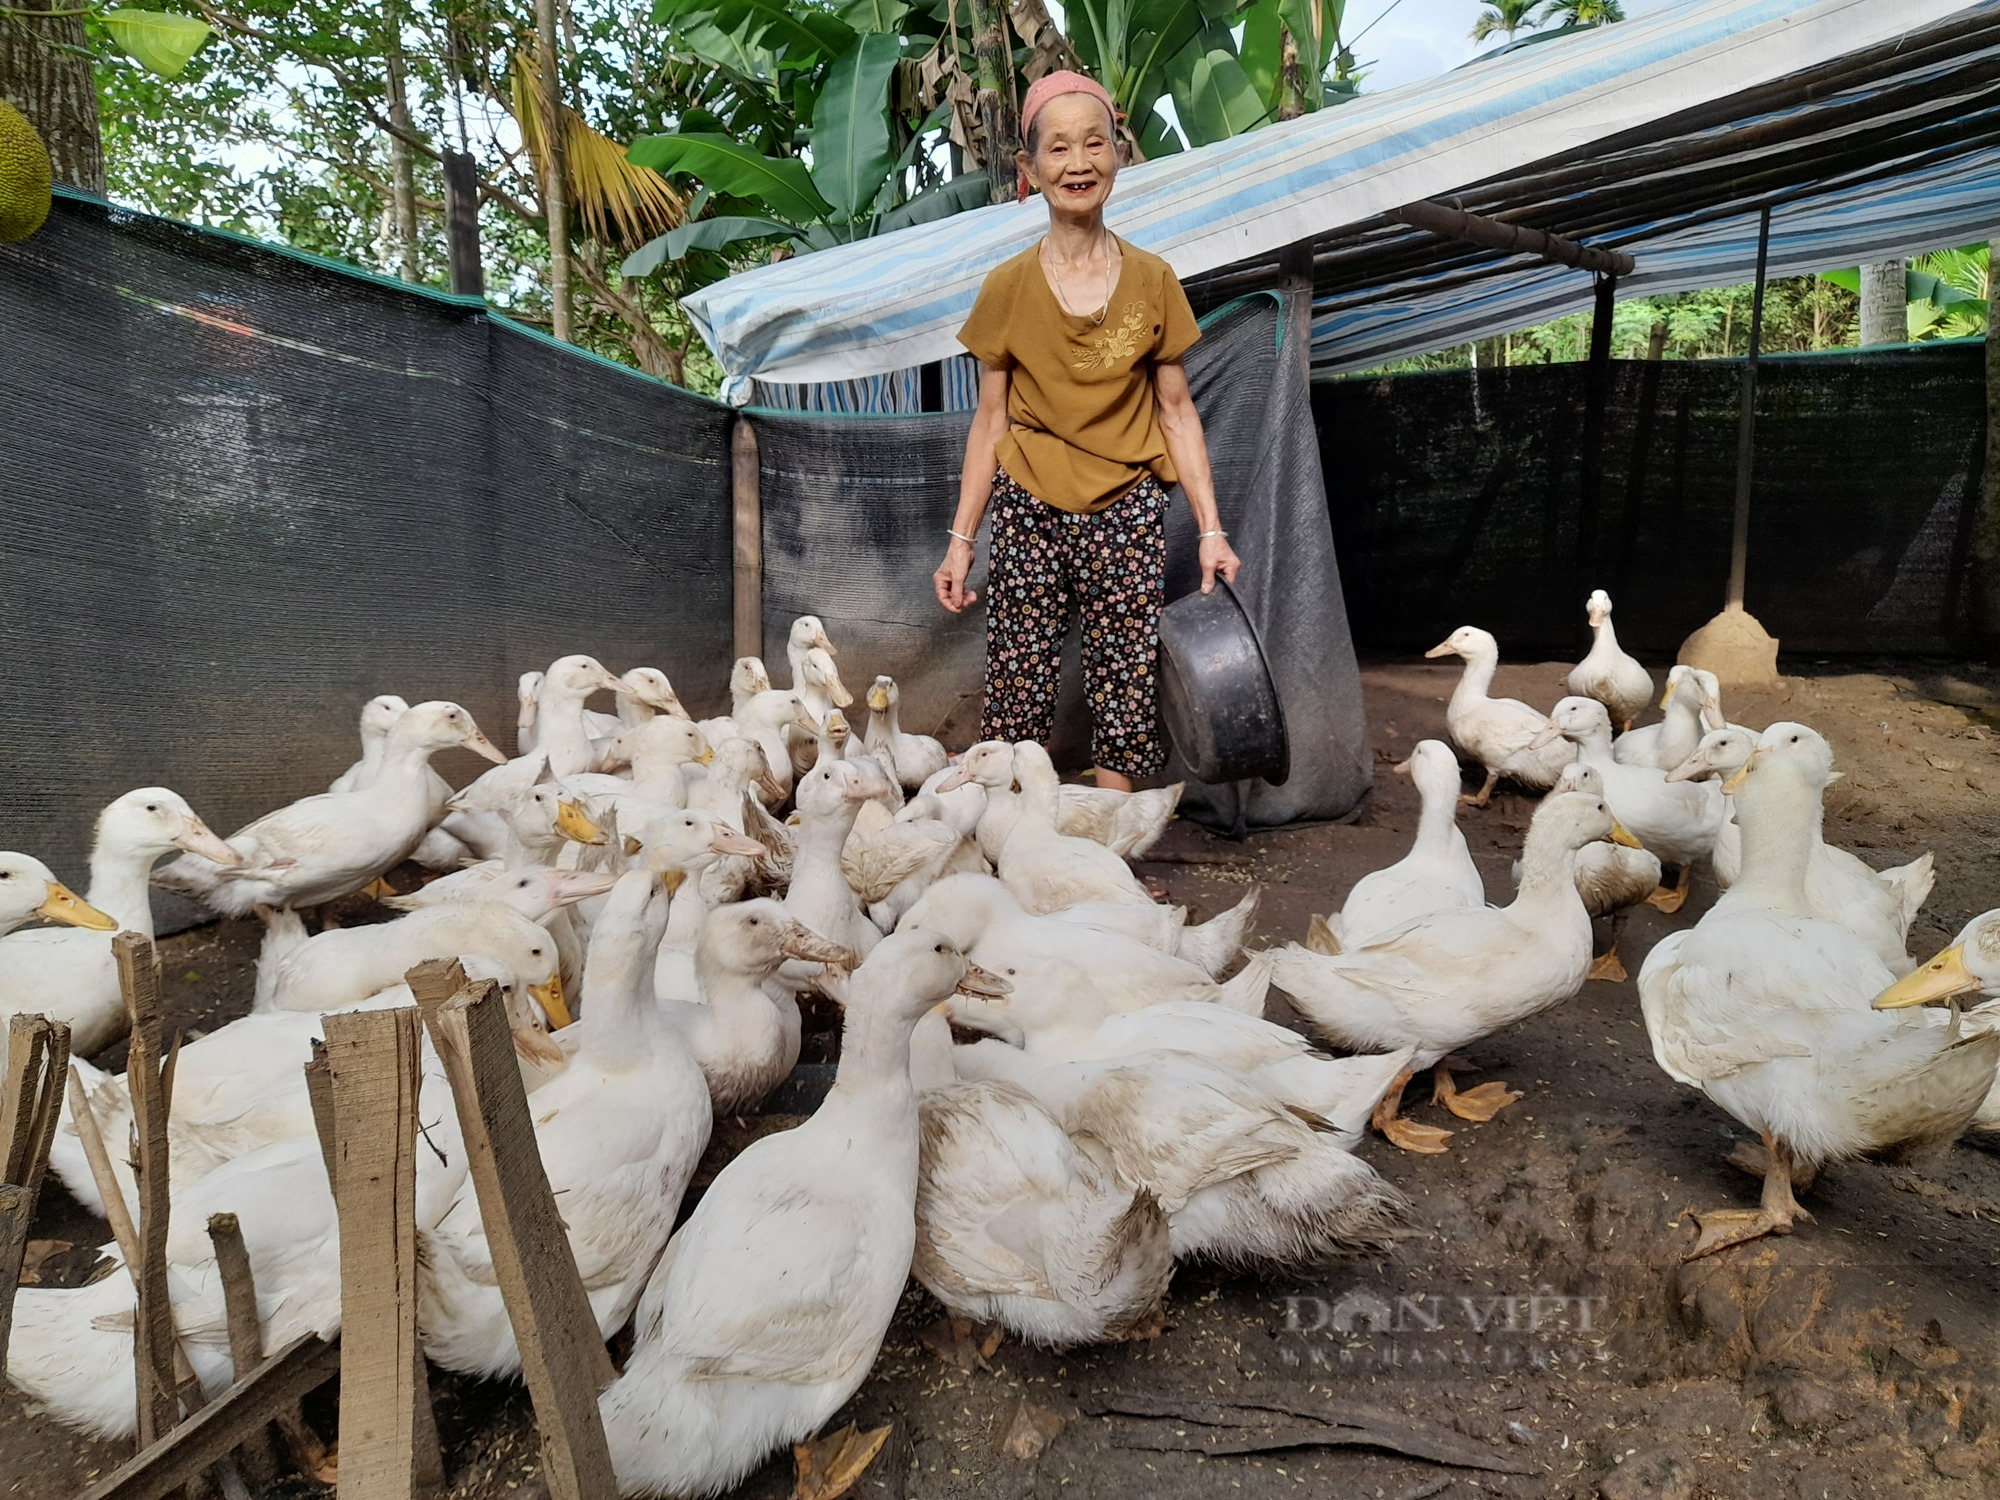 Nông dân nghèo Thanh Hóa tăng thu nhập nhờ được hỗ trợ chăn nuôi vịt theo chuỗi giá trị - Ảnh 1.